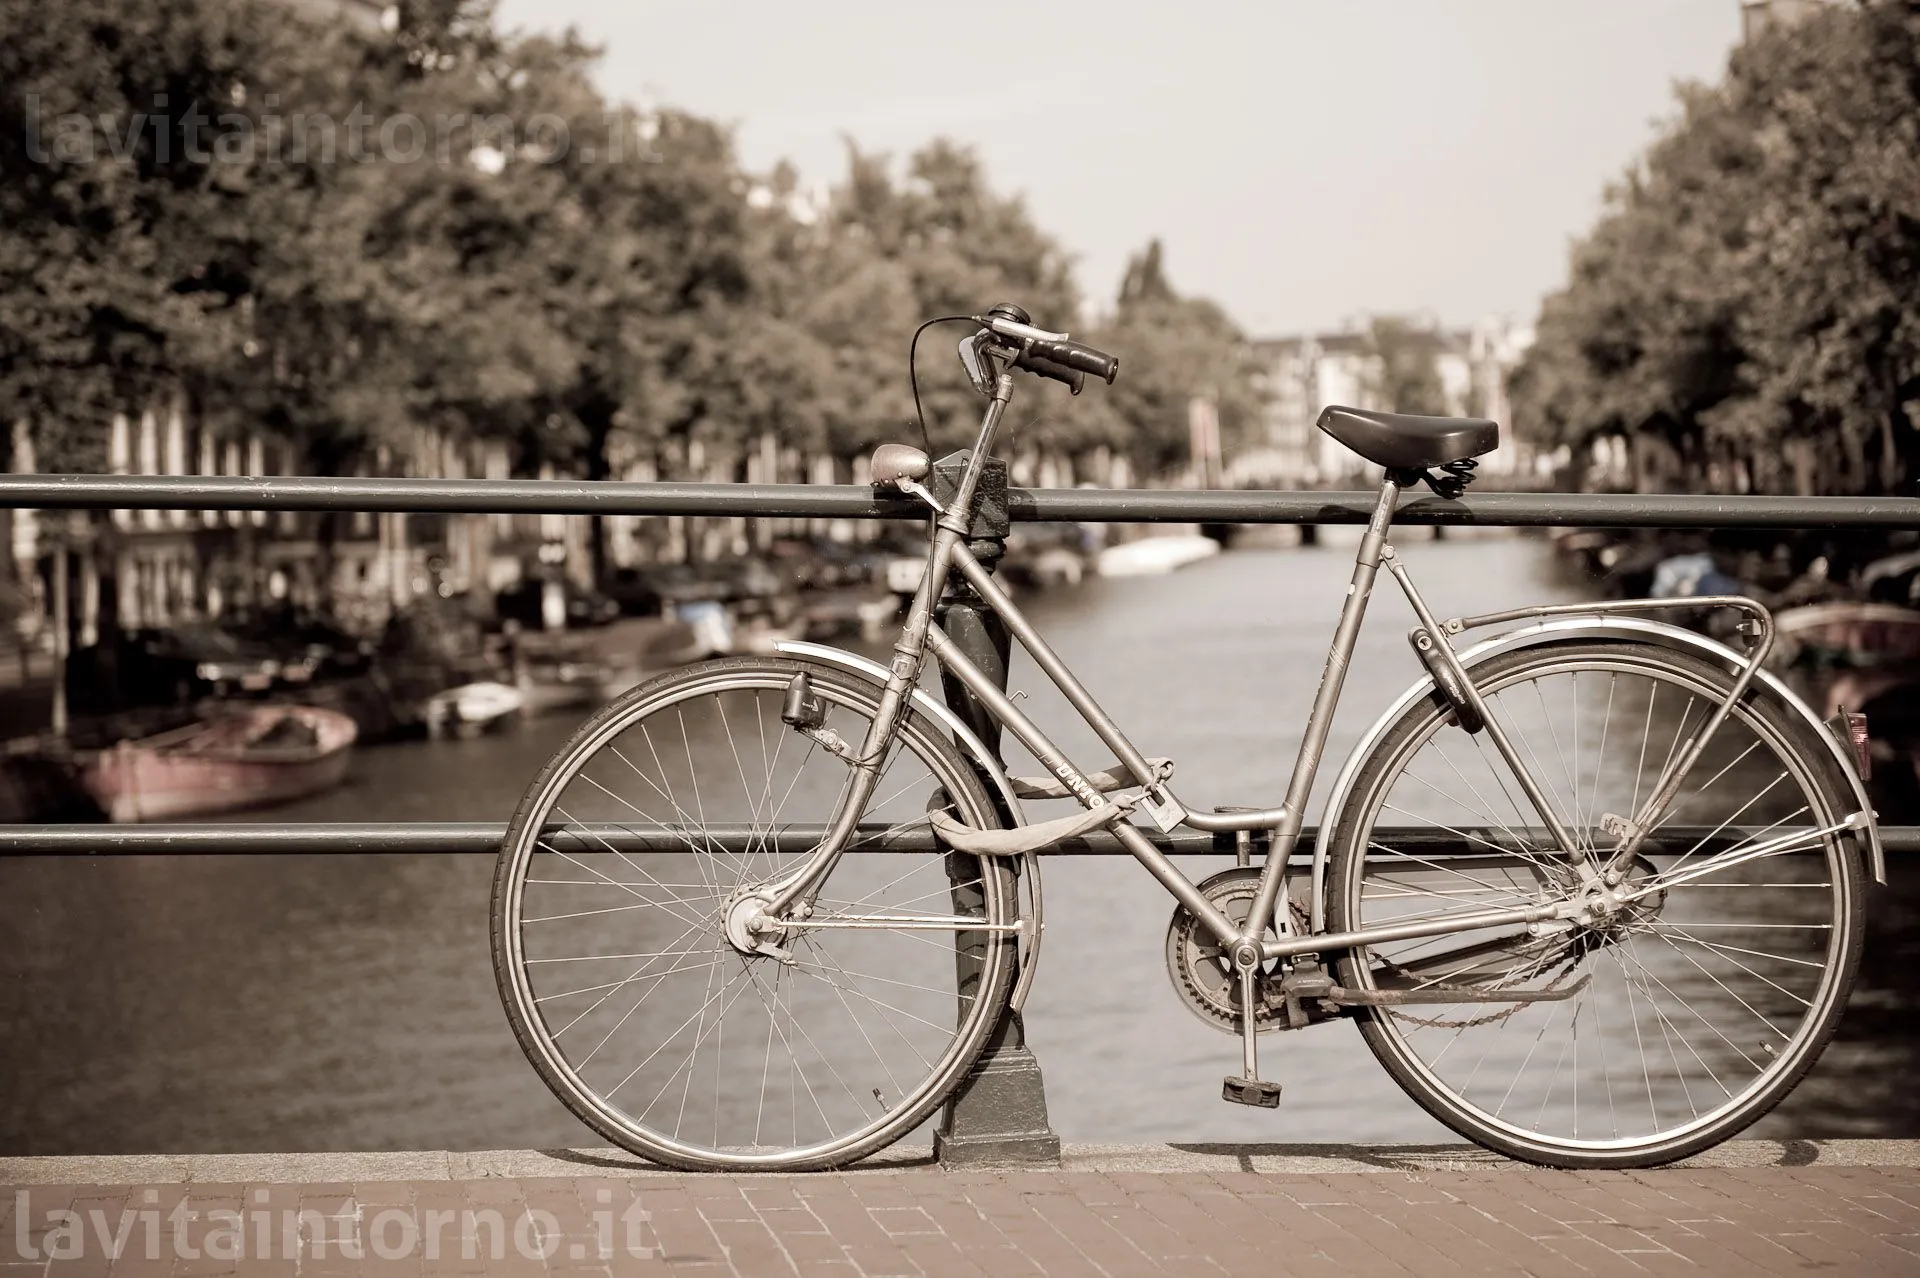 Amsterdam: bike on the bridge #2
D700
Nikkor 24-70 F/2.8G AF-S